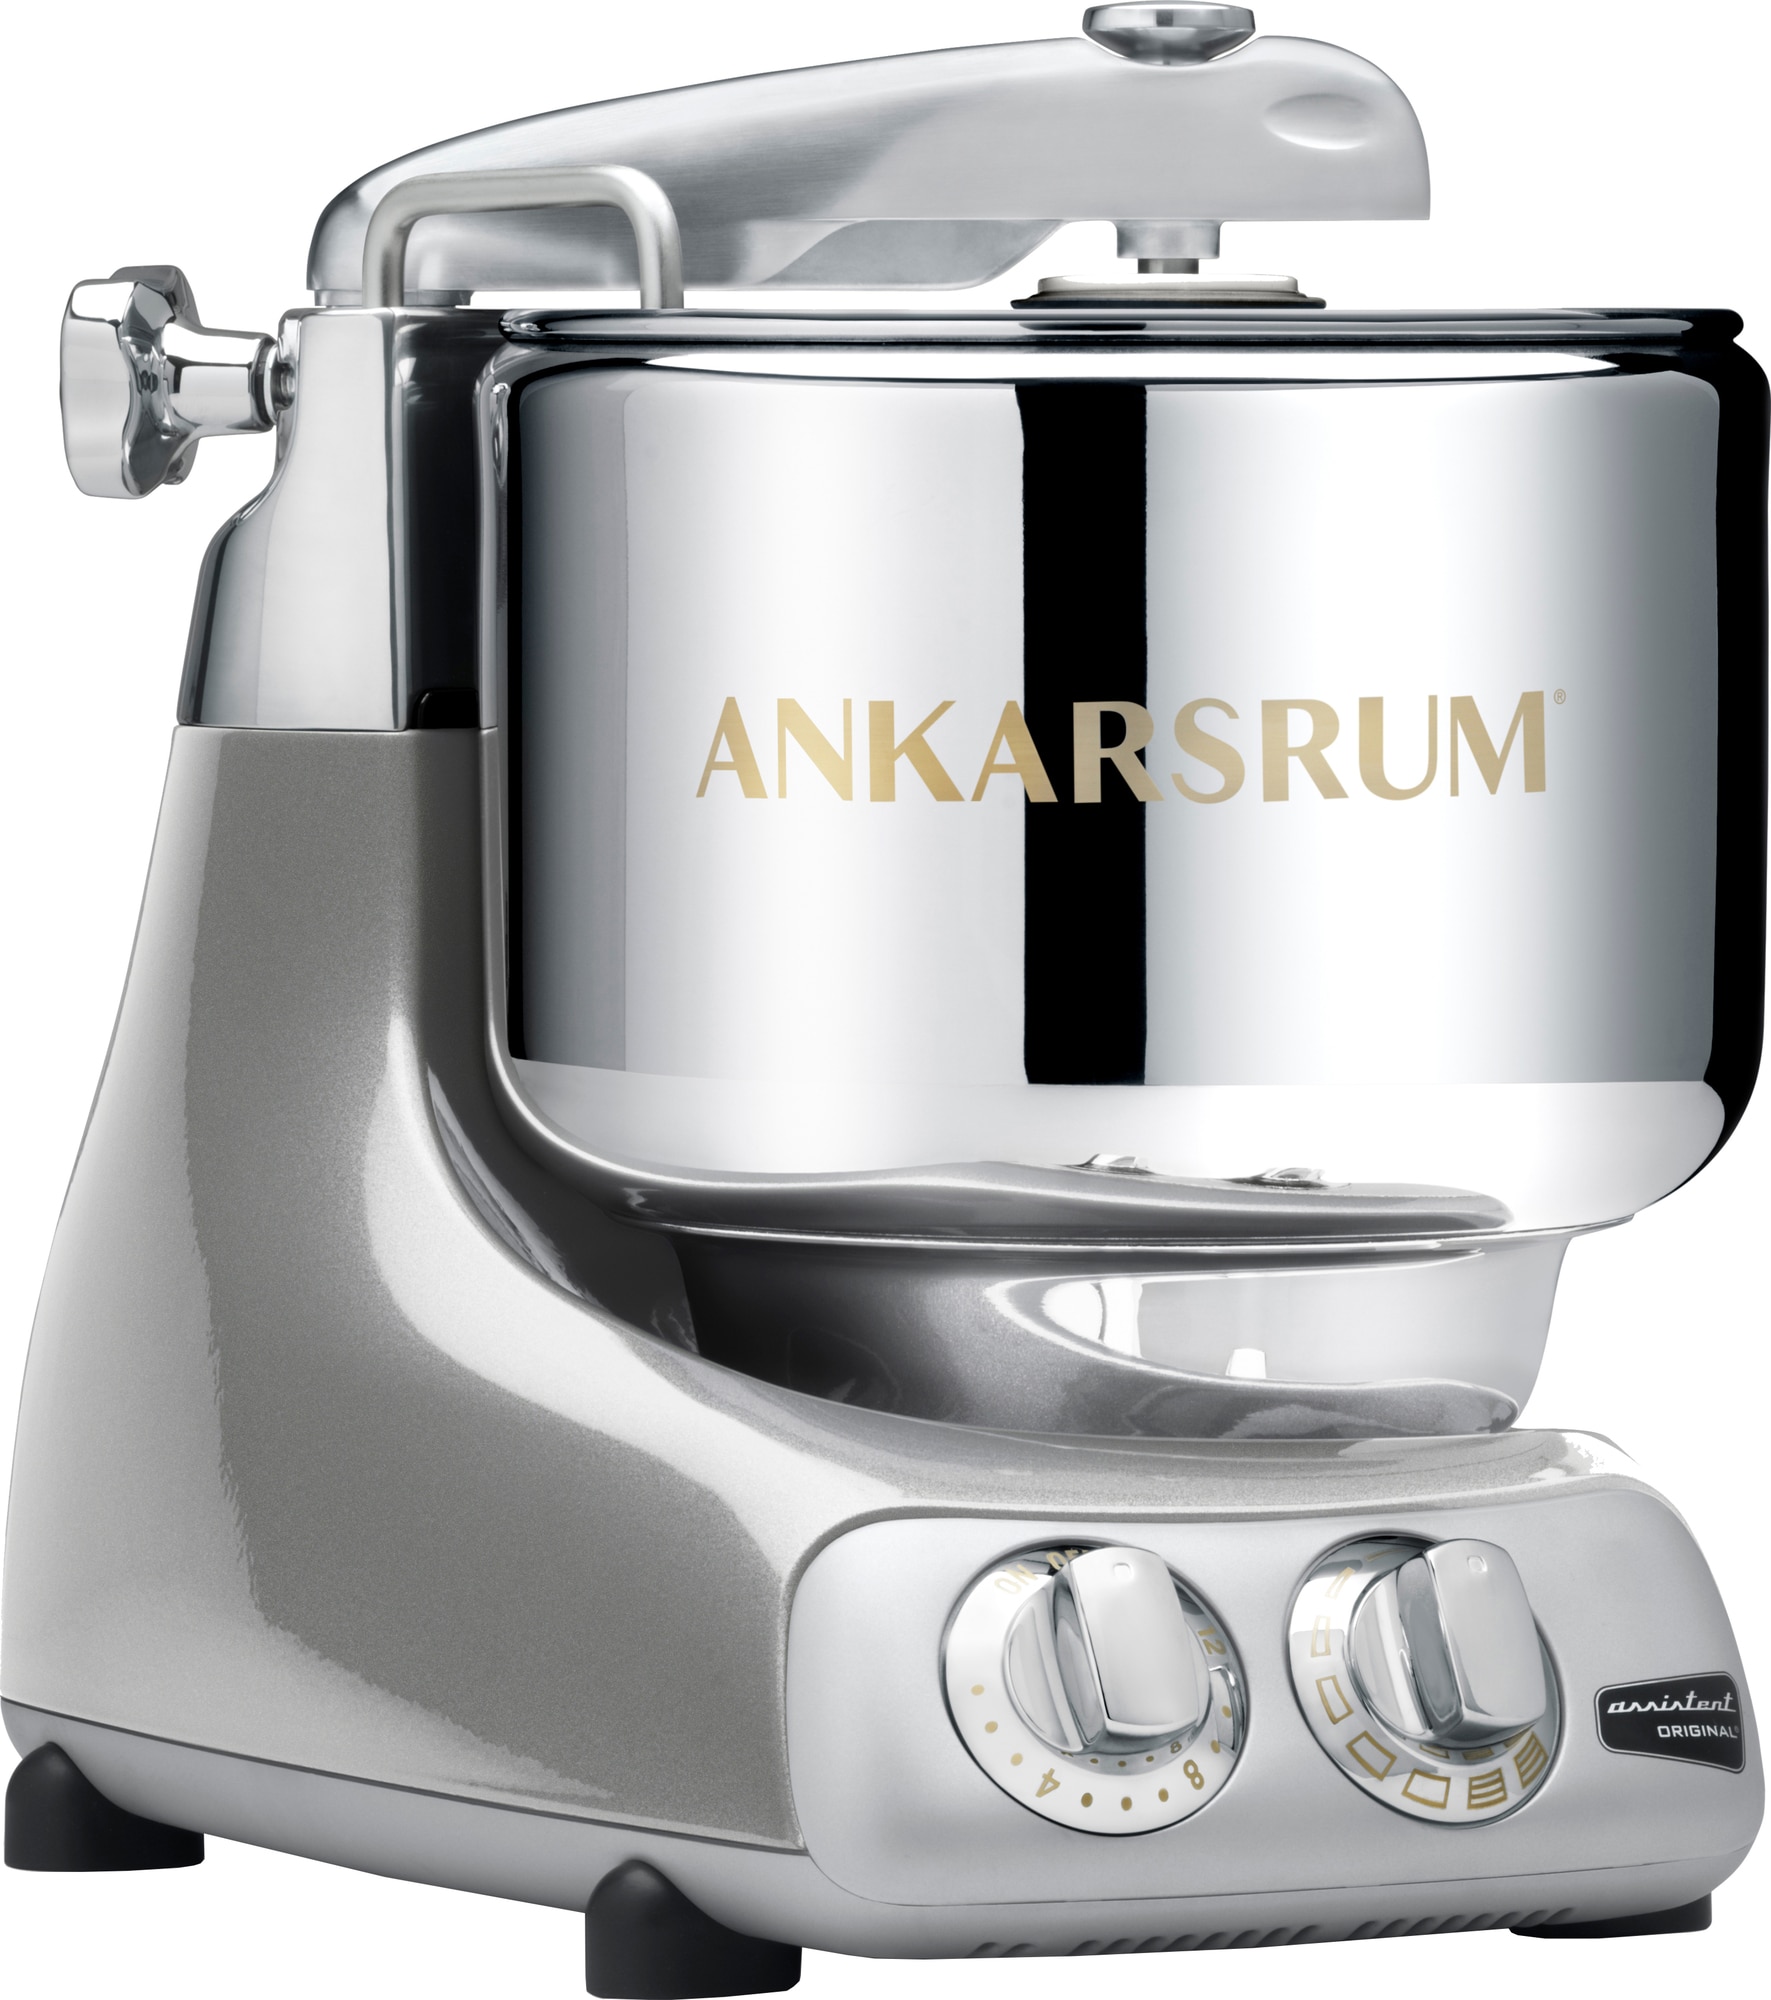 Ankarsrum Jubilee Silver køkkenmaskine AKM6230 (sølv) thumbnail